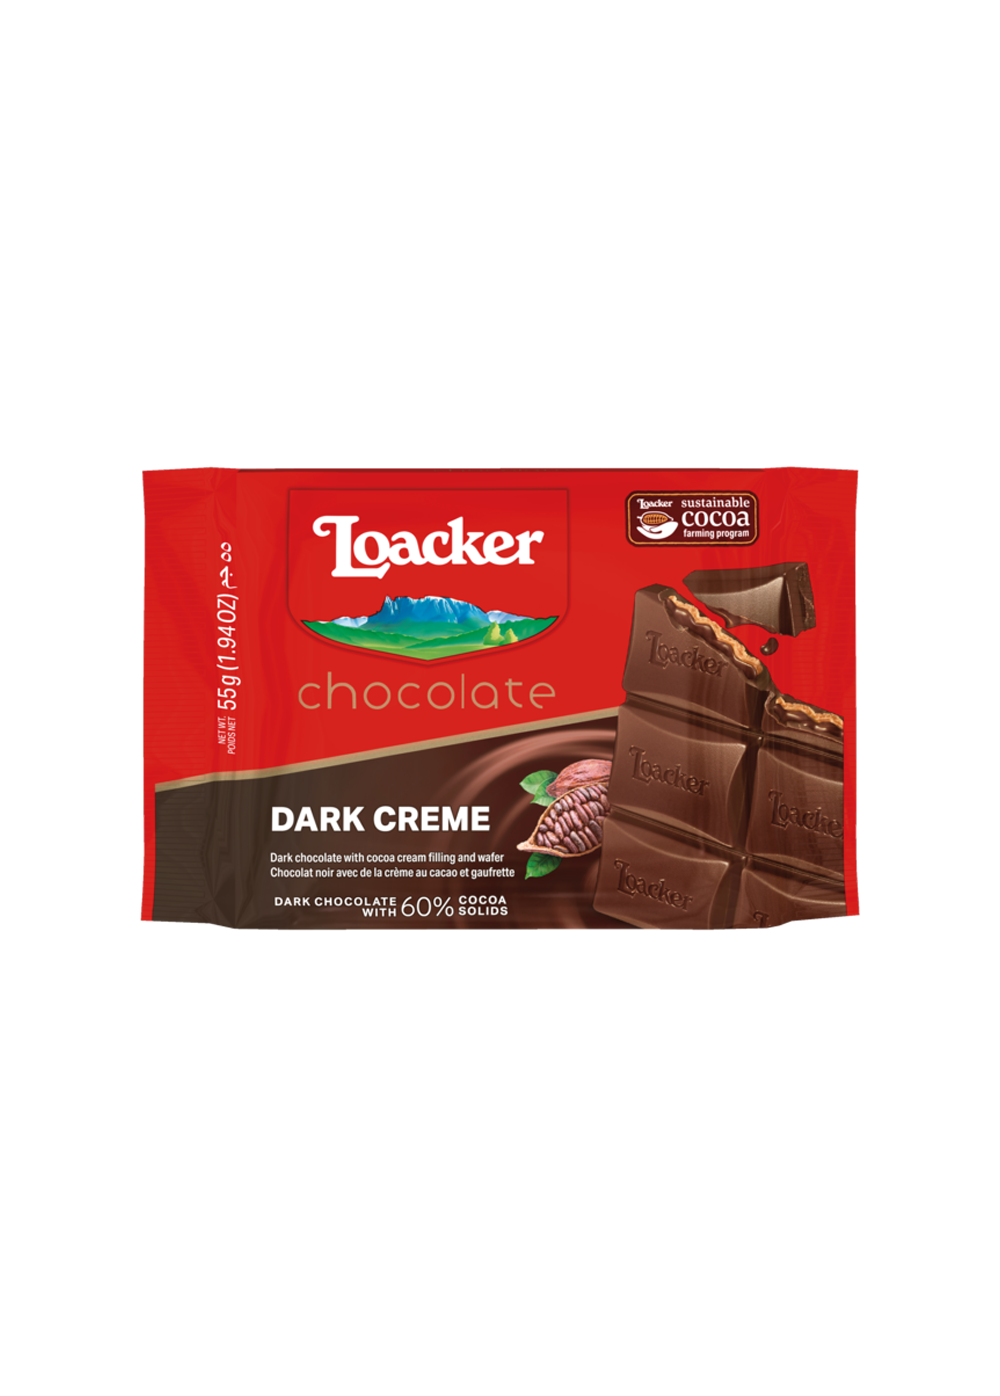 Loacker Chocolate Dark Creme 55g